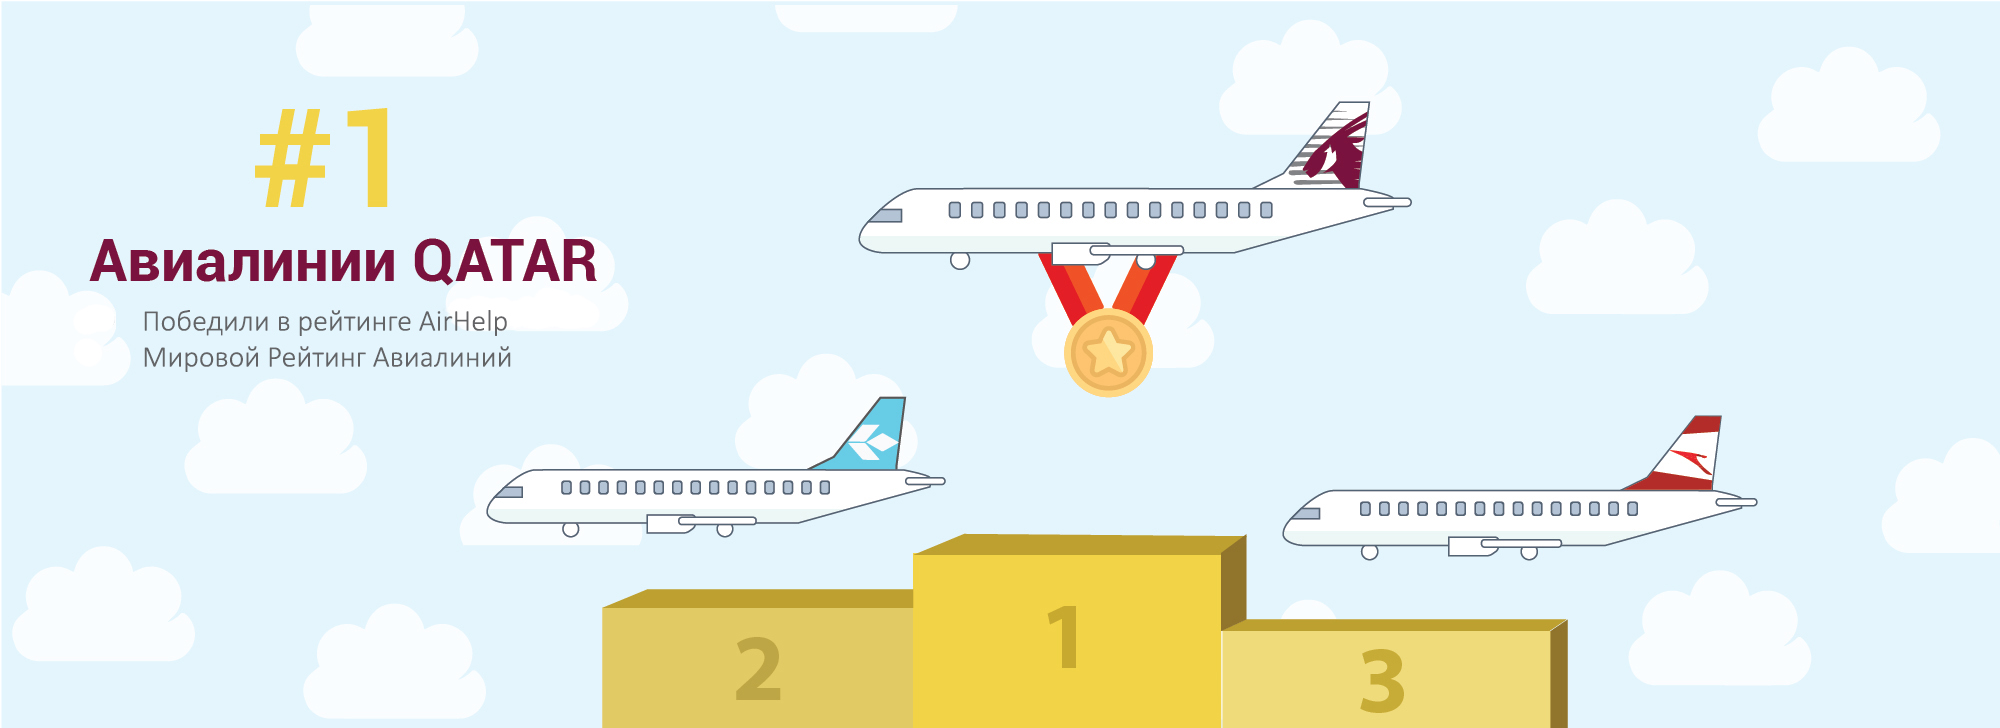 Qatar Airways побеждают в обслуживании клиентов по мировому уровню